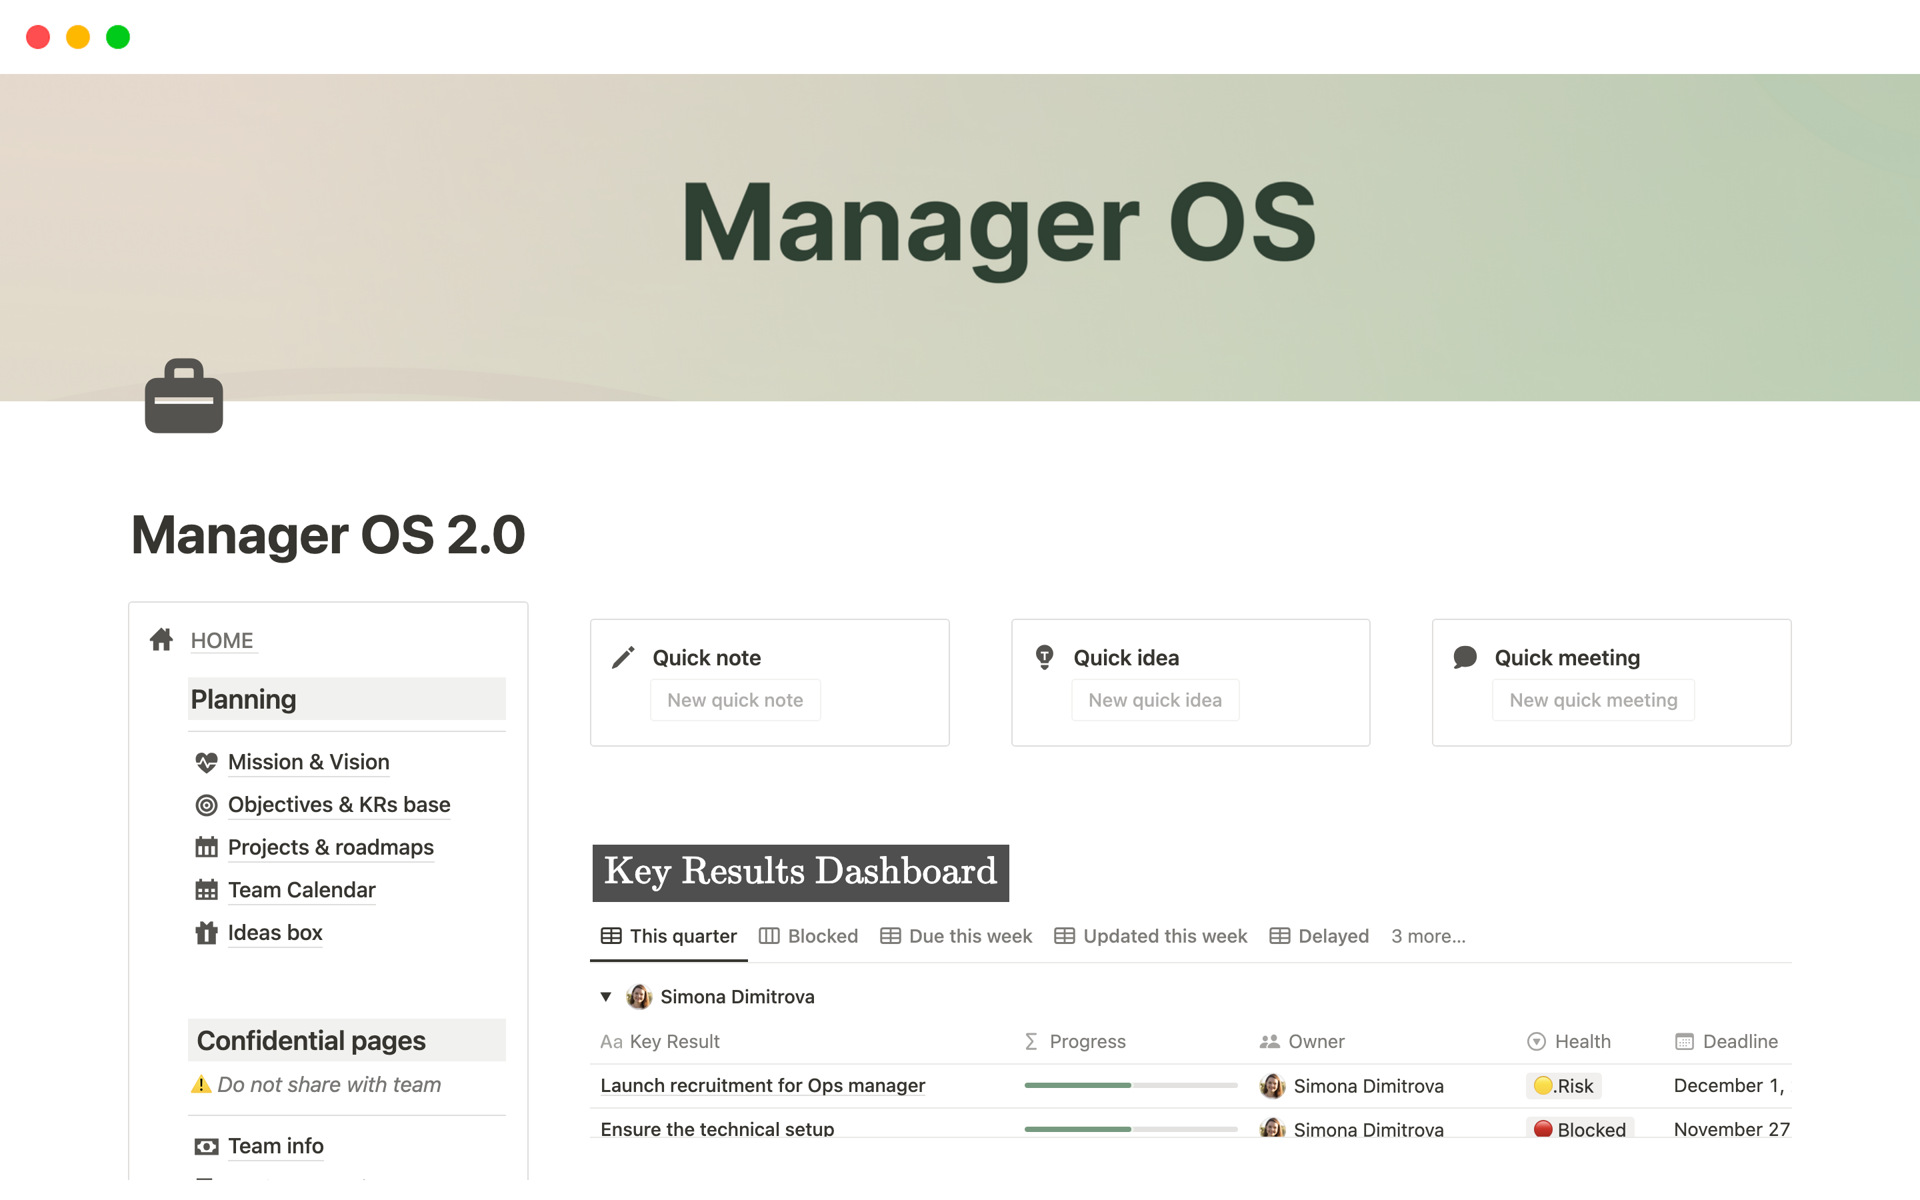 Uma prévia do modelo para ManagerOS: Premium System for Team Leaders